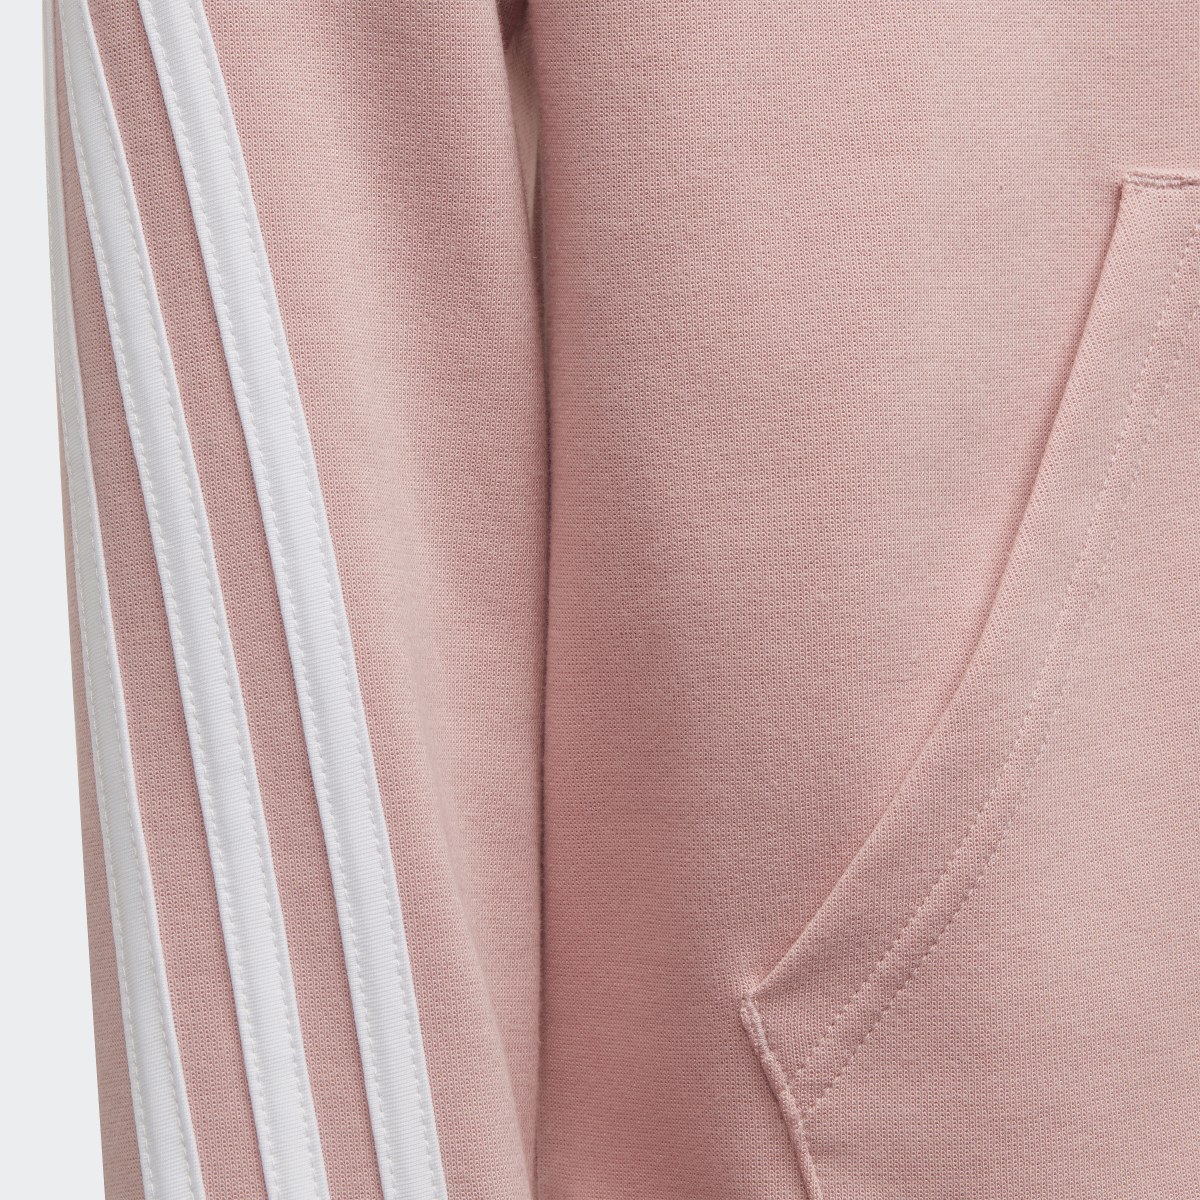 Adidas 3-Stripes Full-Zip Hoodie. 4